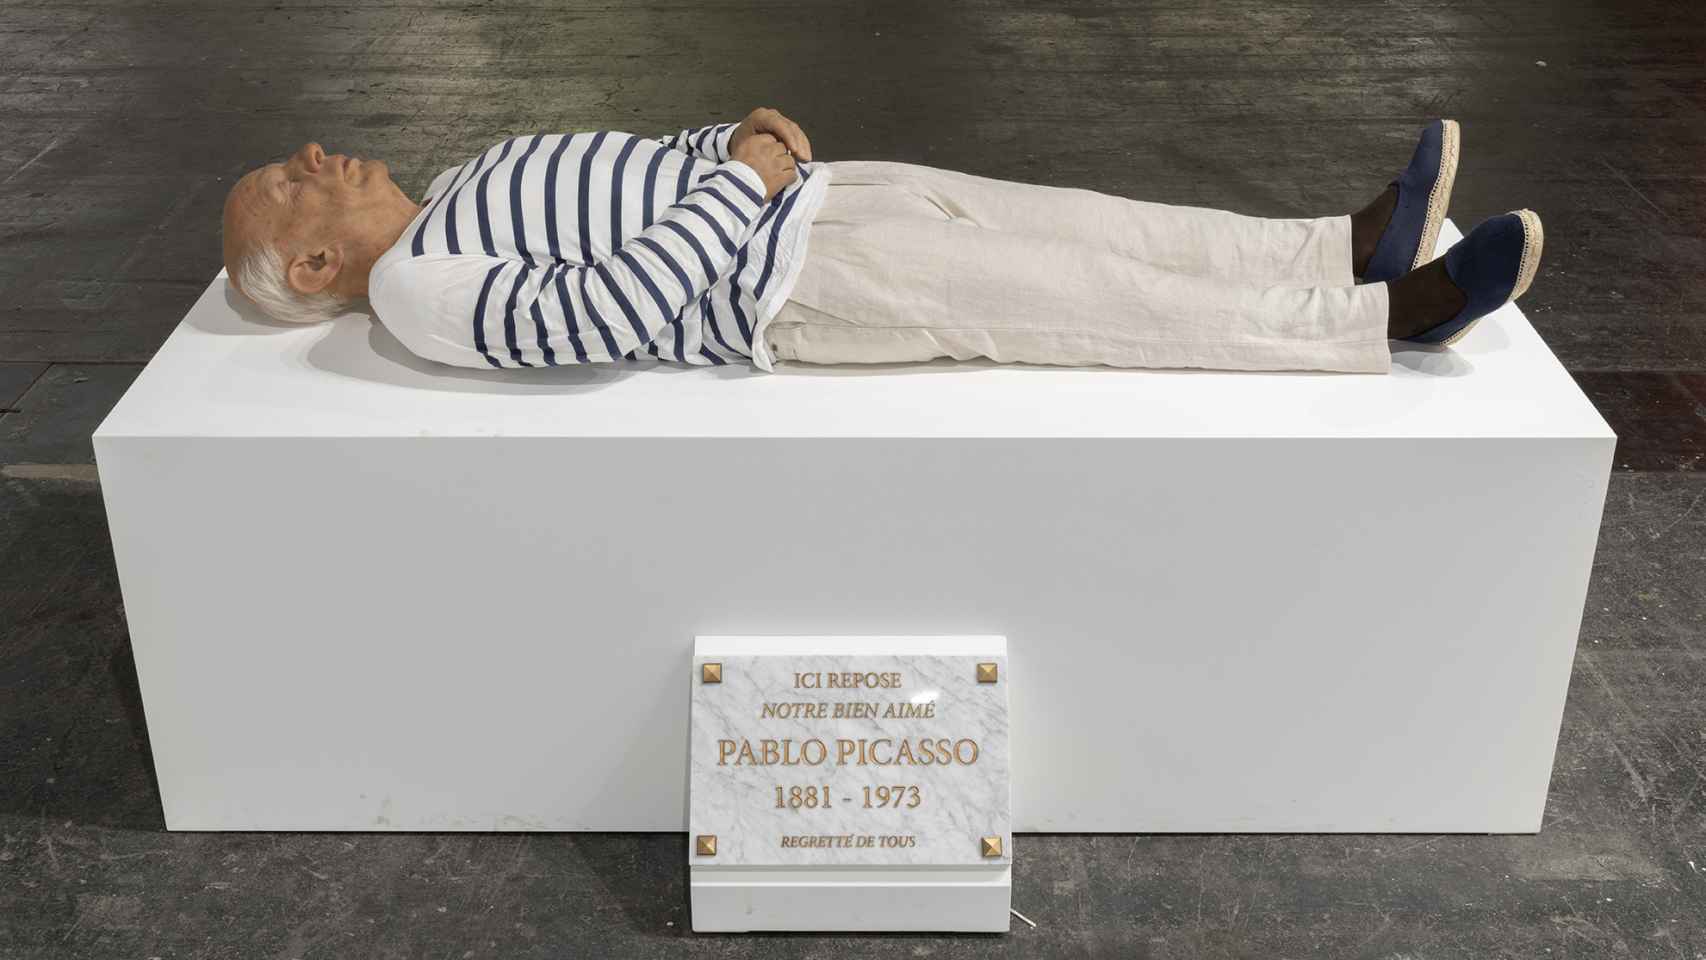 Eugenio Merino: 'Aquí murió Picasso', 2017. Galería ADN